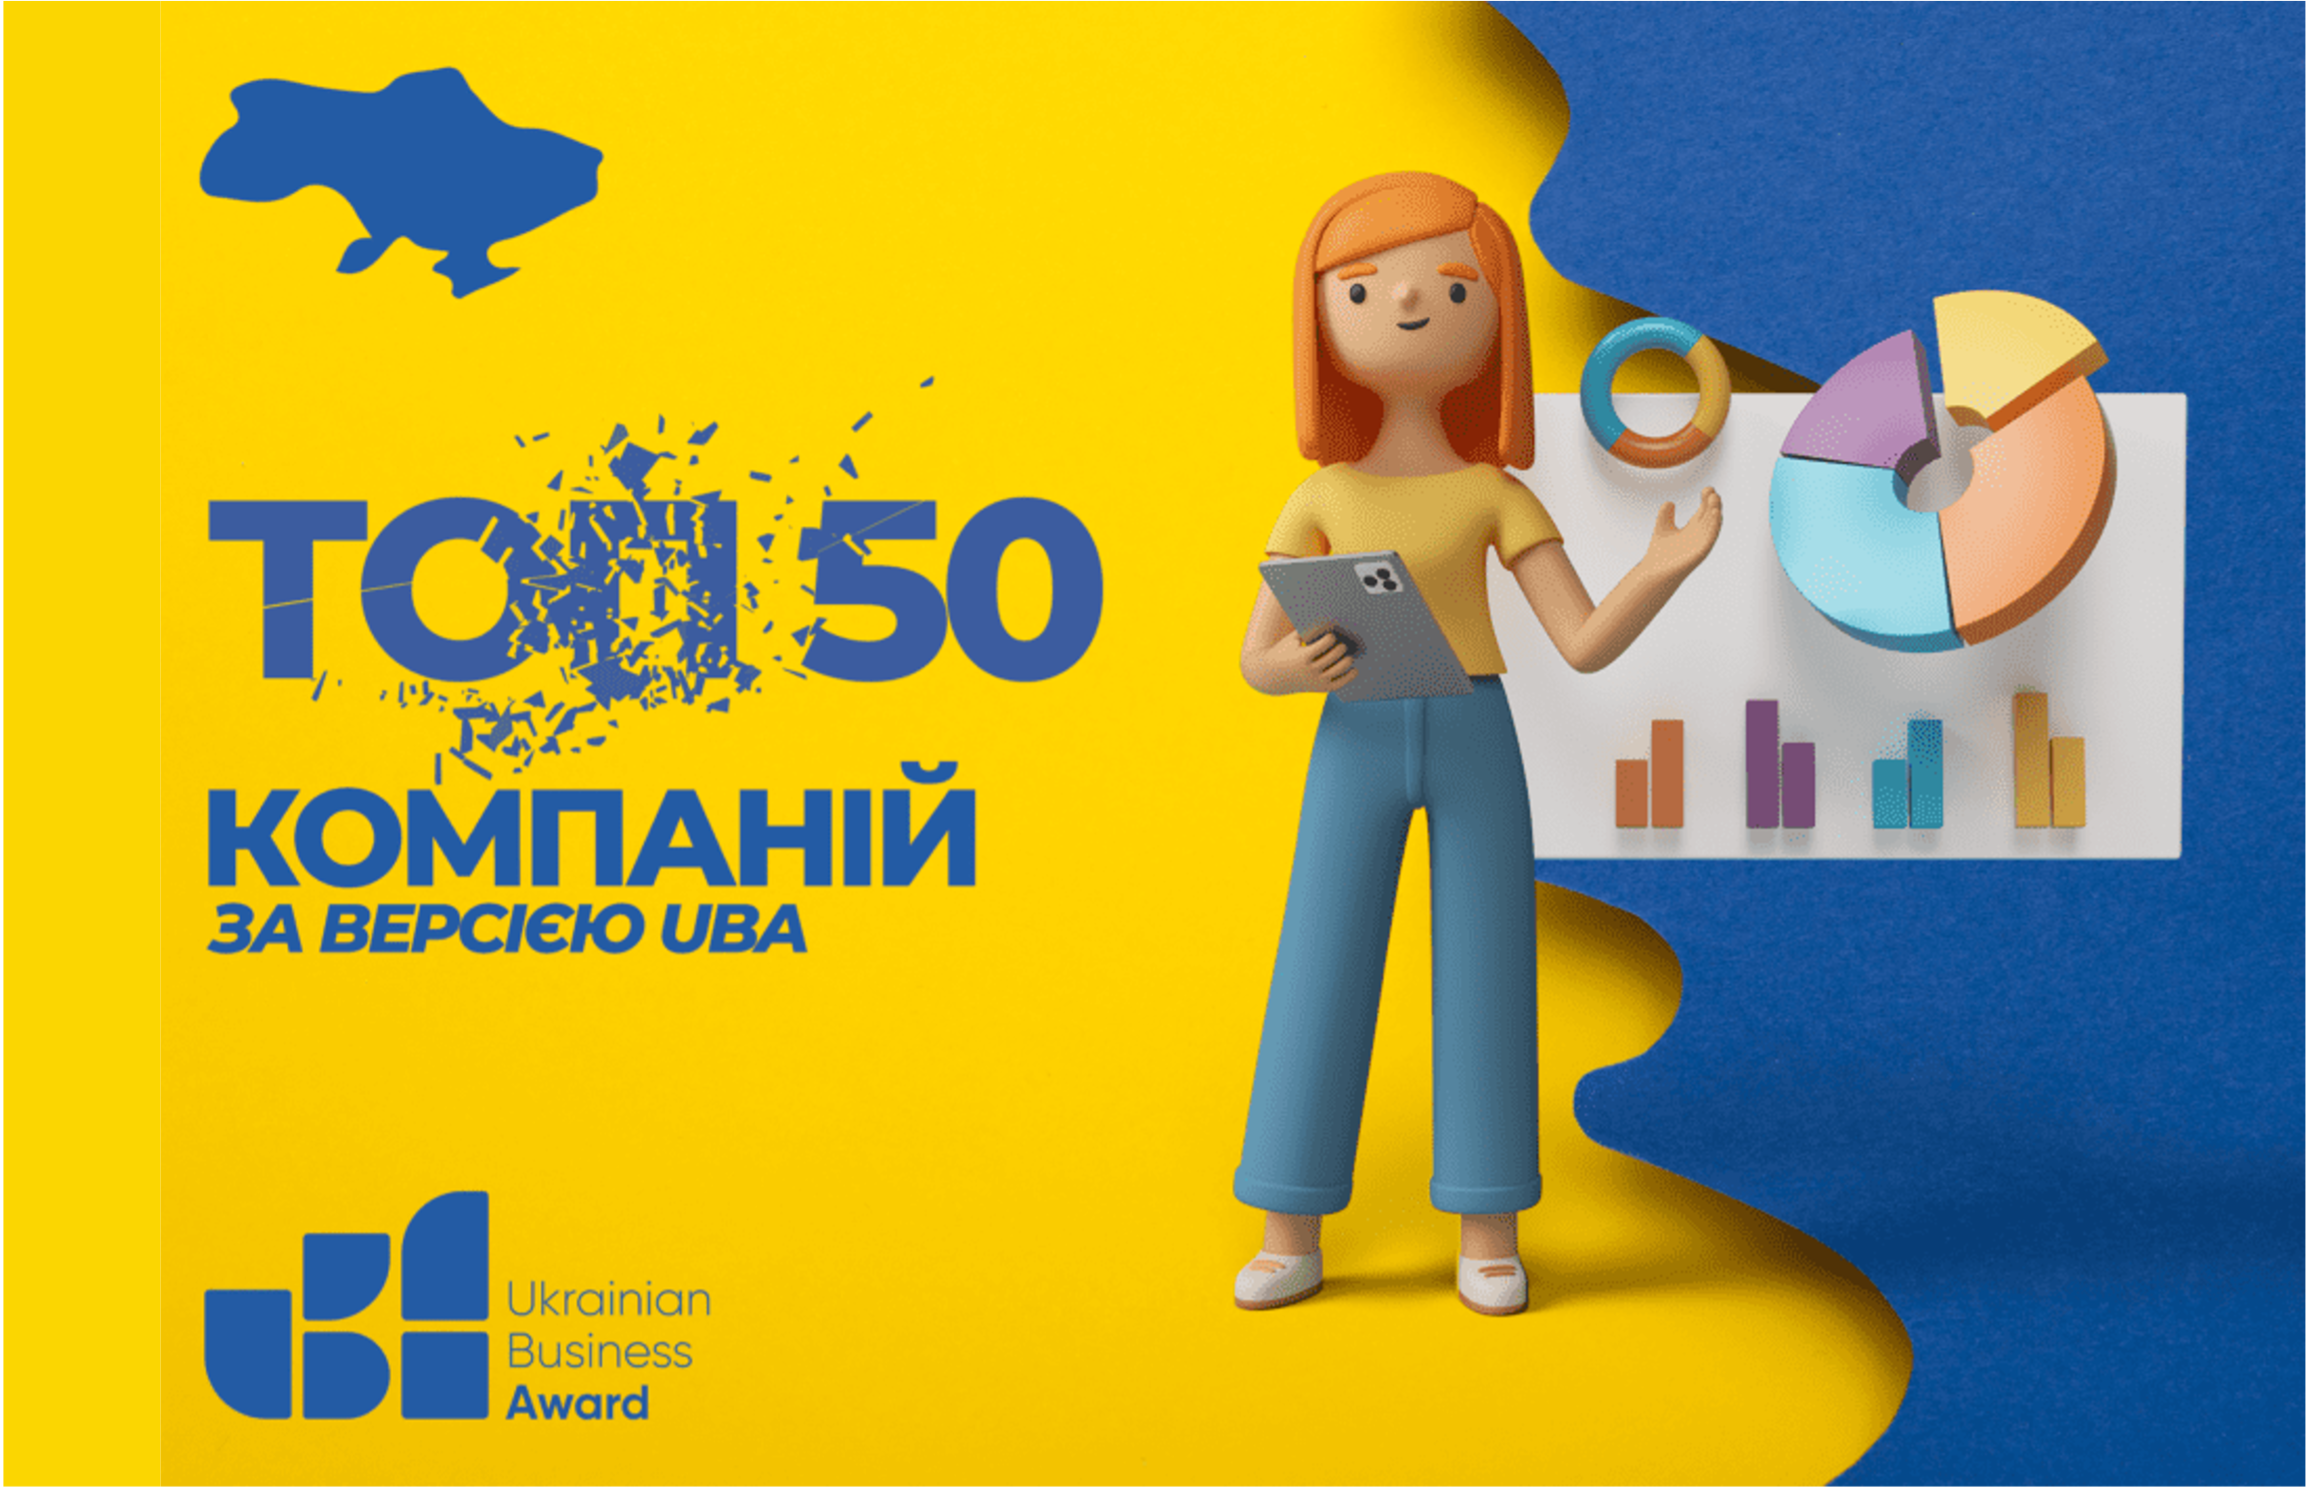 ТОВ «САНАГРО УКРАЇНА» увійшла у список ТОП-50 кращих компаній, працюючих в Україні, за версією Ukrainian Business Award.